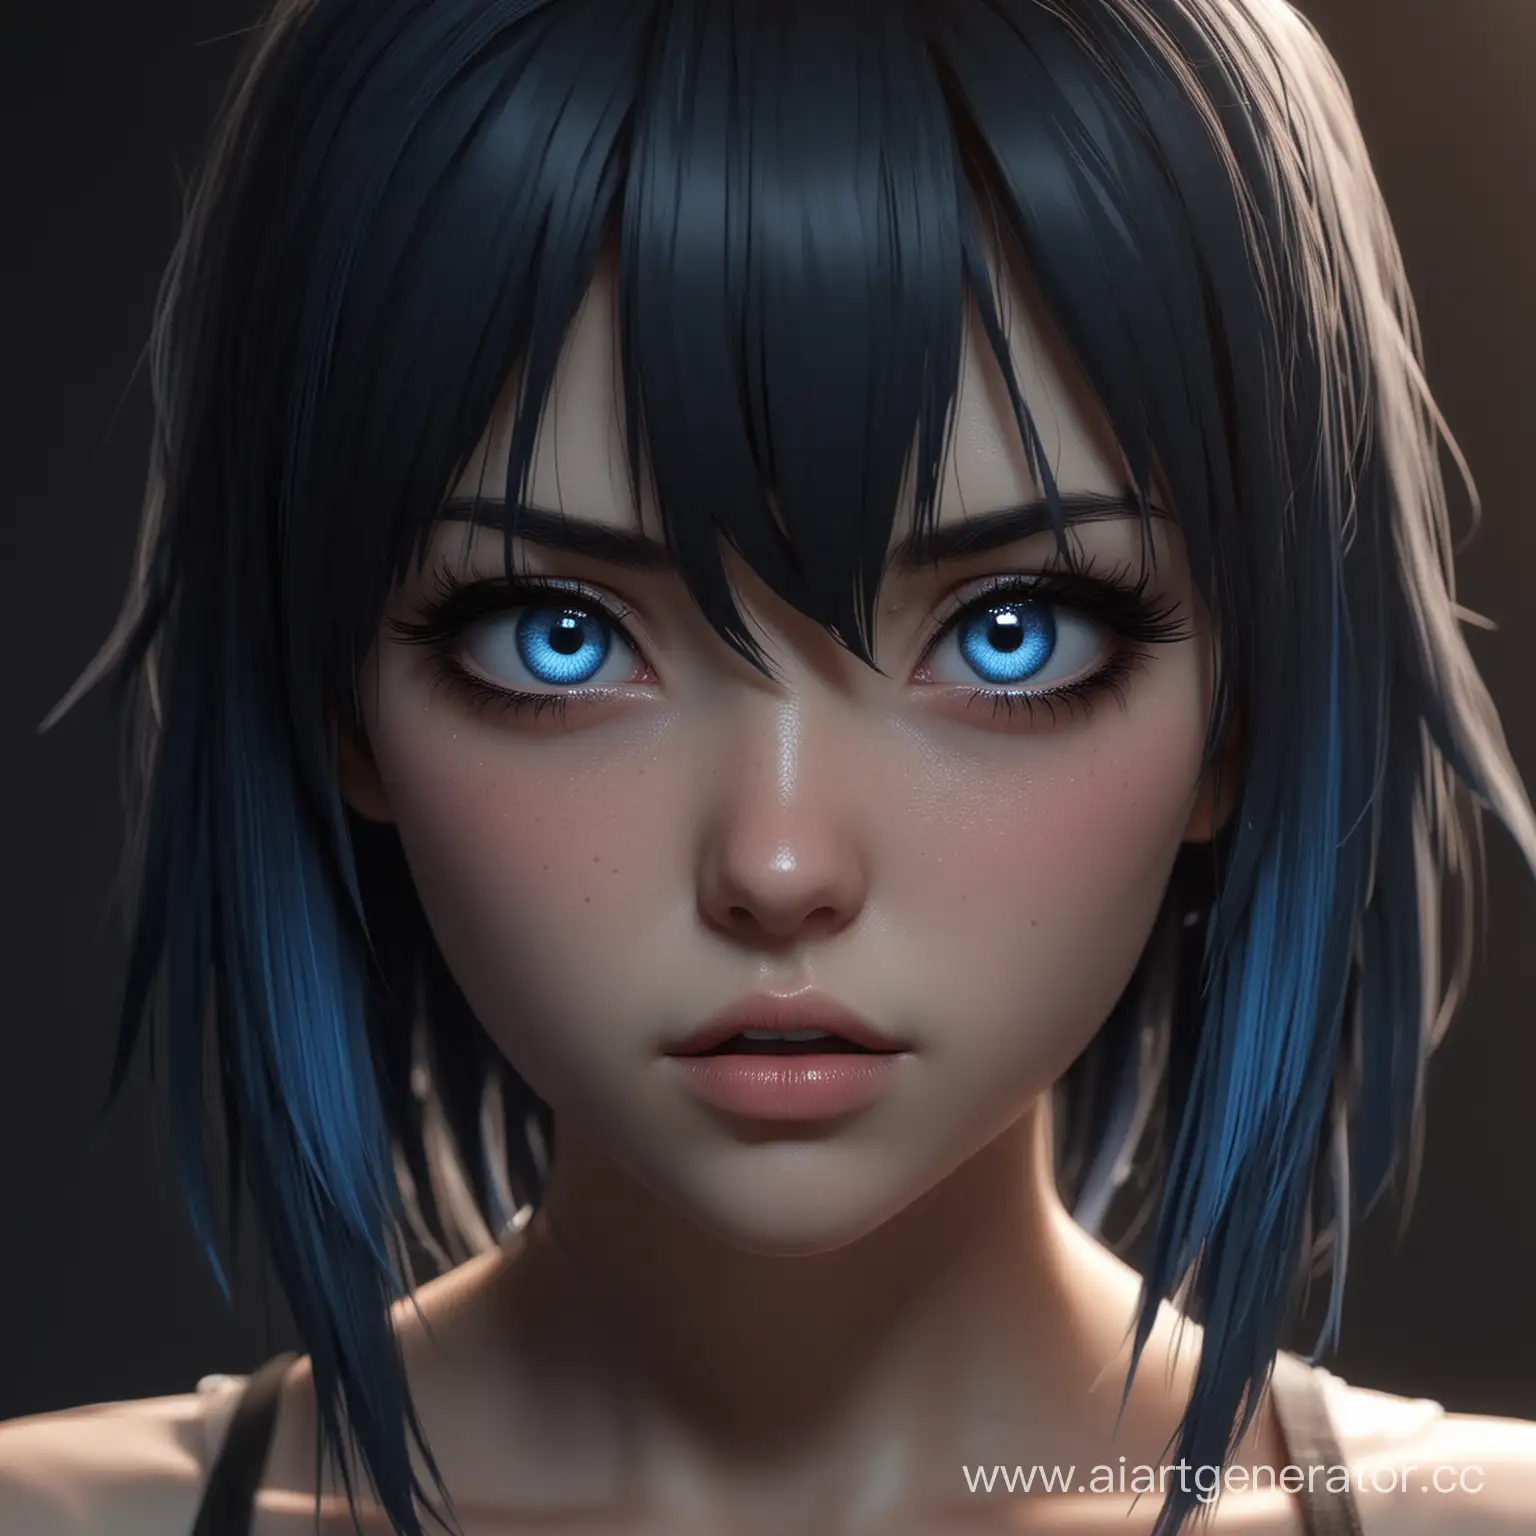 3D аниме девочка агрессивным взглядом смотрит в камеру, реалистично, блики, тени, в тёмном помещении, белая кожа, красивые глаза, тёмные волосы, синий свет попадает на ёё лицо